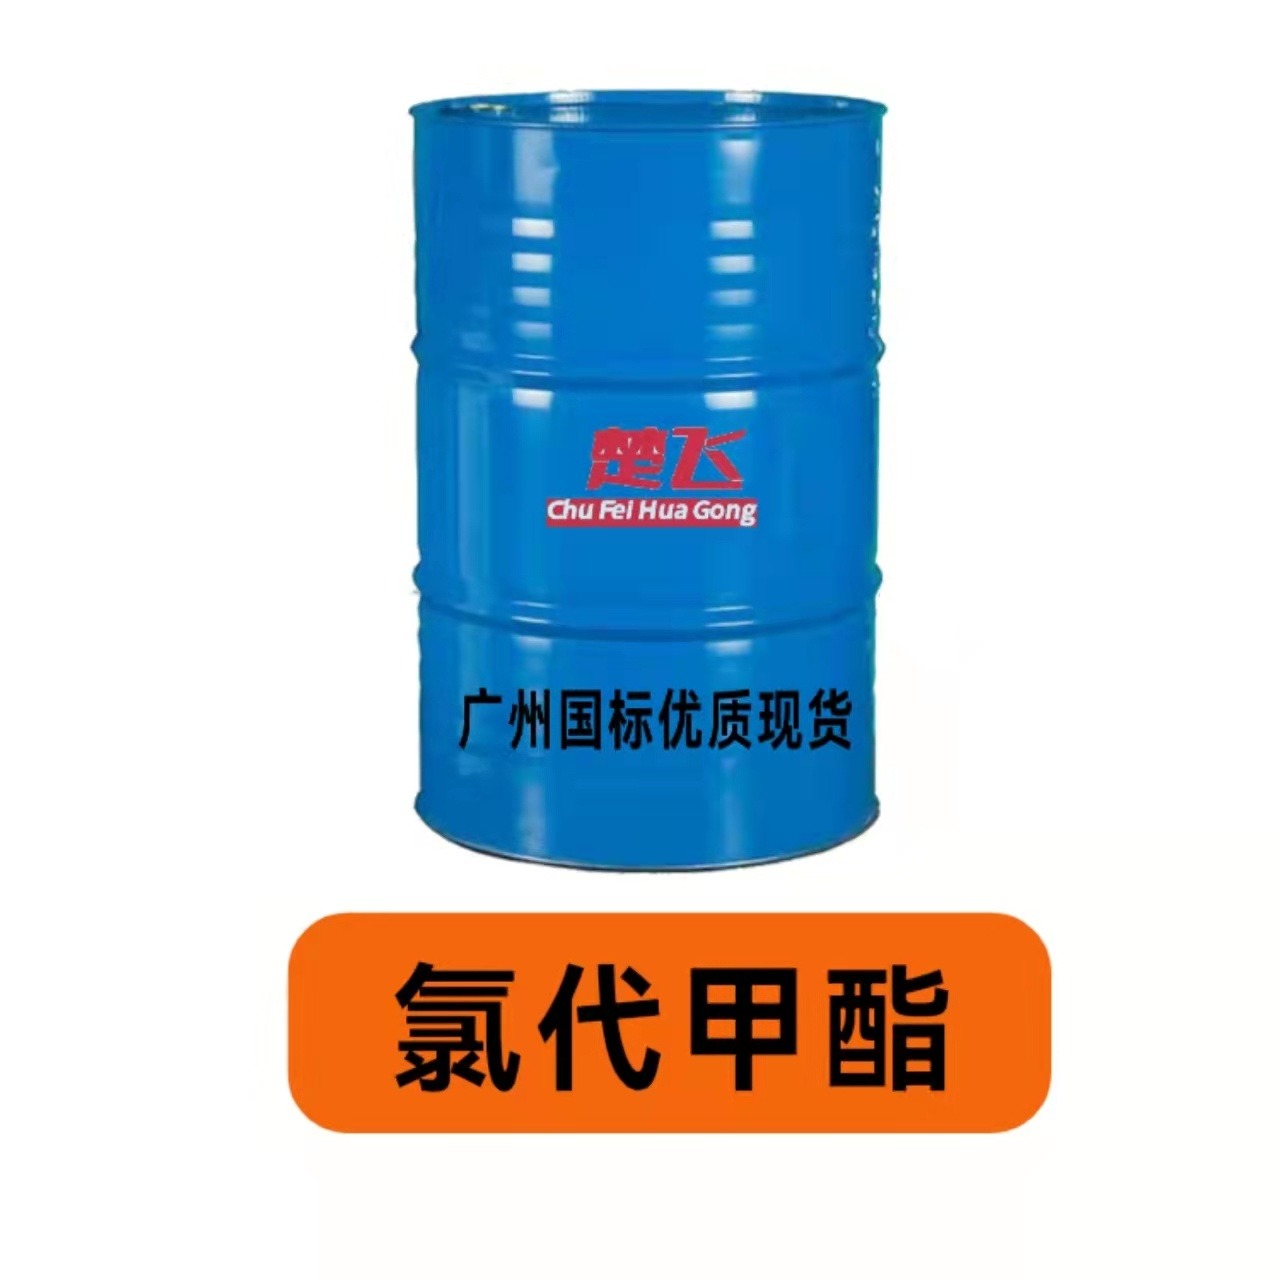 广州楚飞 氯代甲酯  高品质二辛脂 二丁酯替代品增塑剂 降低成本图片